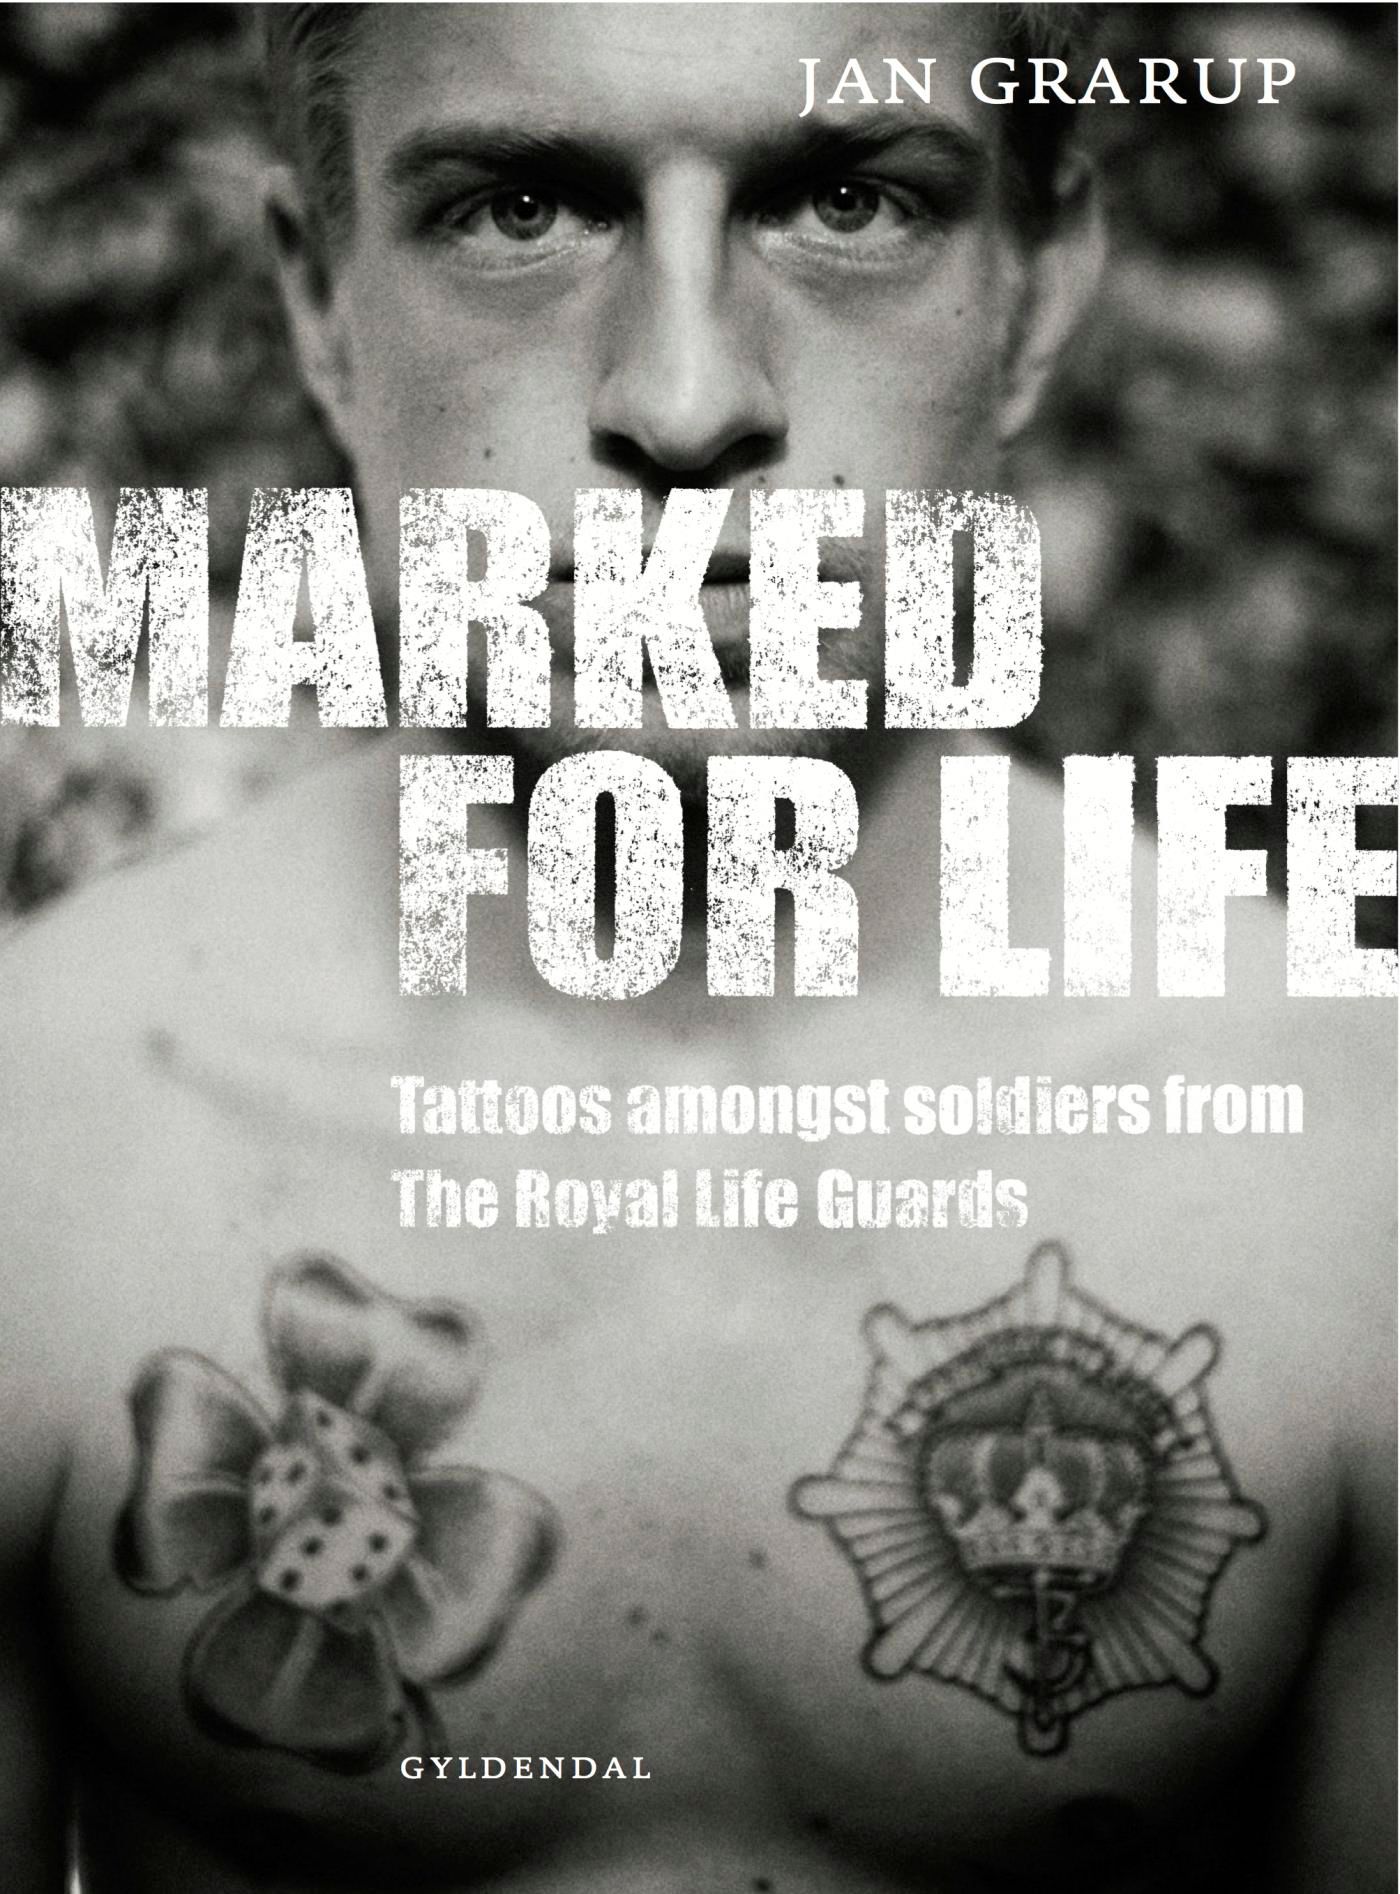 Marked for Life, eBook by Jan Grarup, Den Kongelige Livgarde